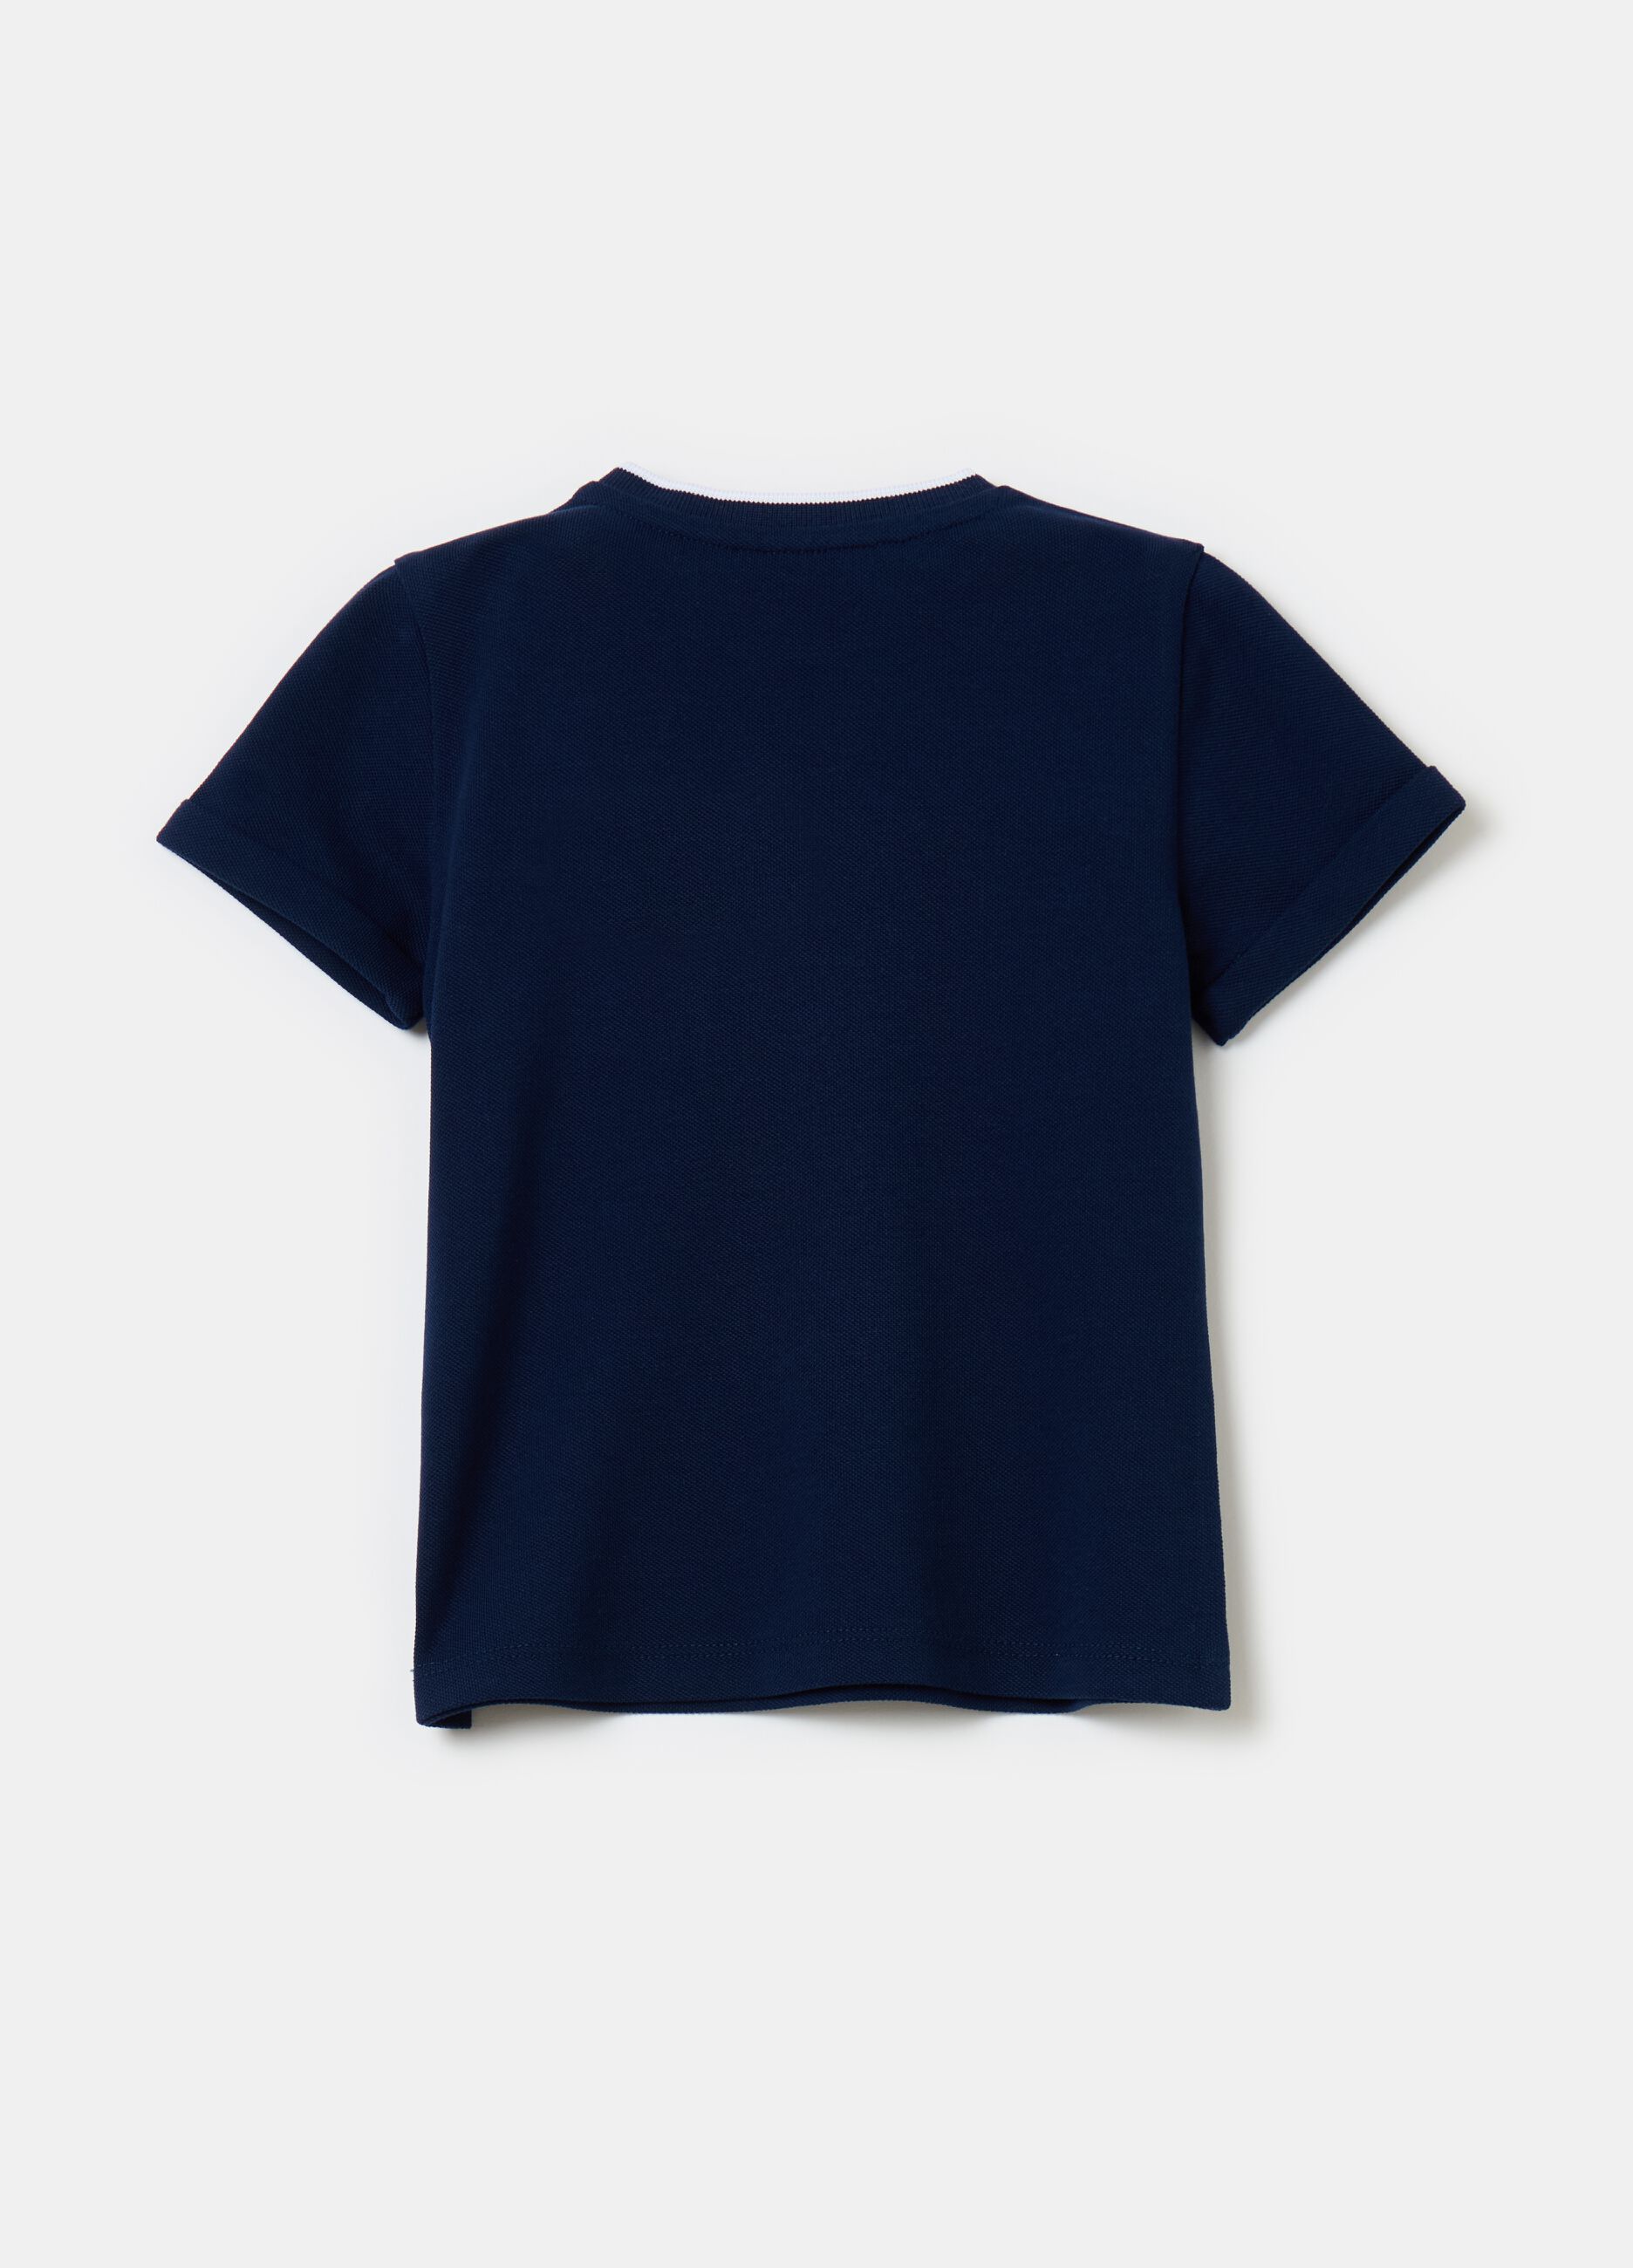 Piquet T-shirt with pocket